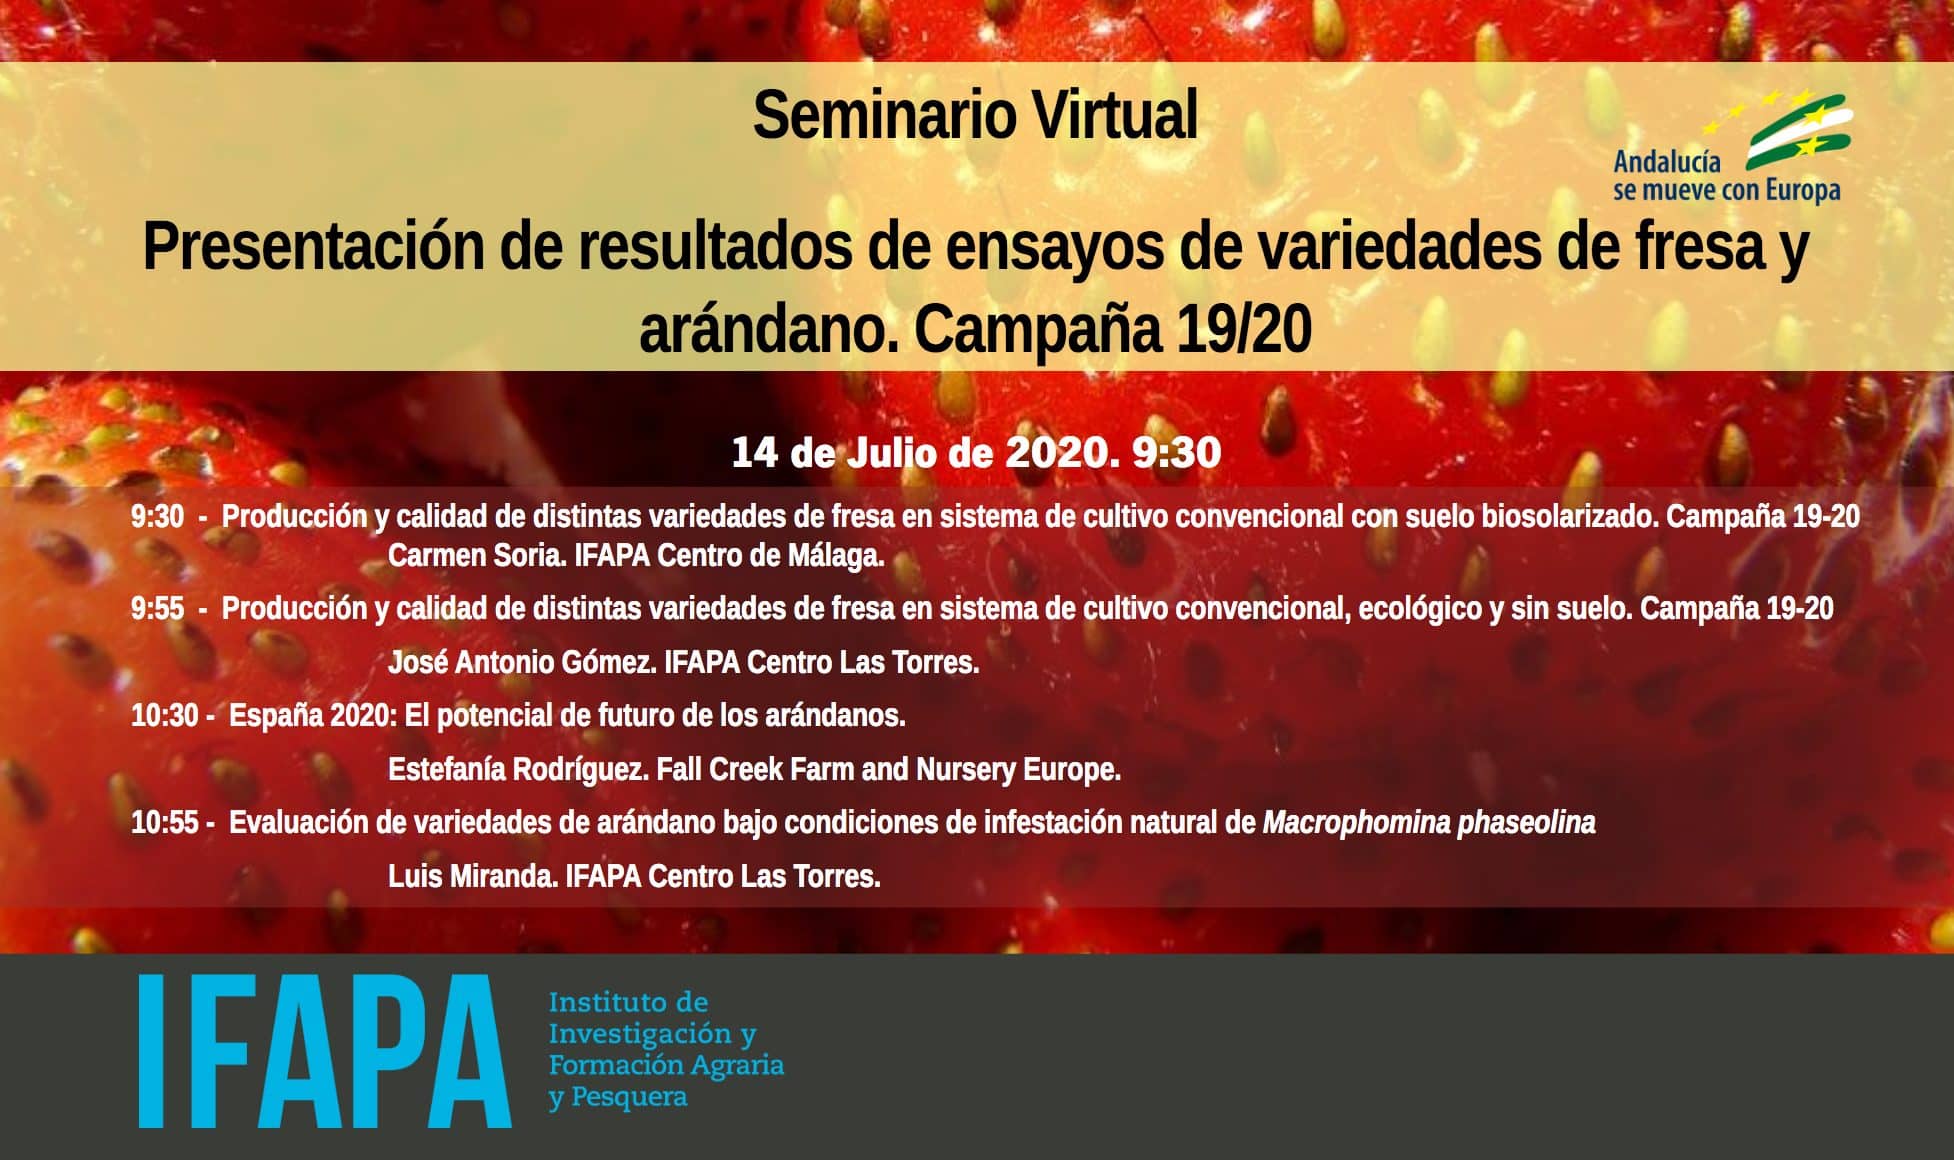 Seminario Virtual IFAPA: PRESENTACIÓN DE RESULTADOS DE ENSAYOS DE VARIEDADES DE FRESA Y ARÁNDANO